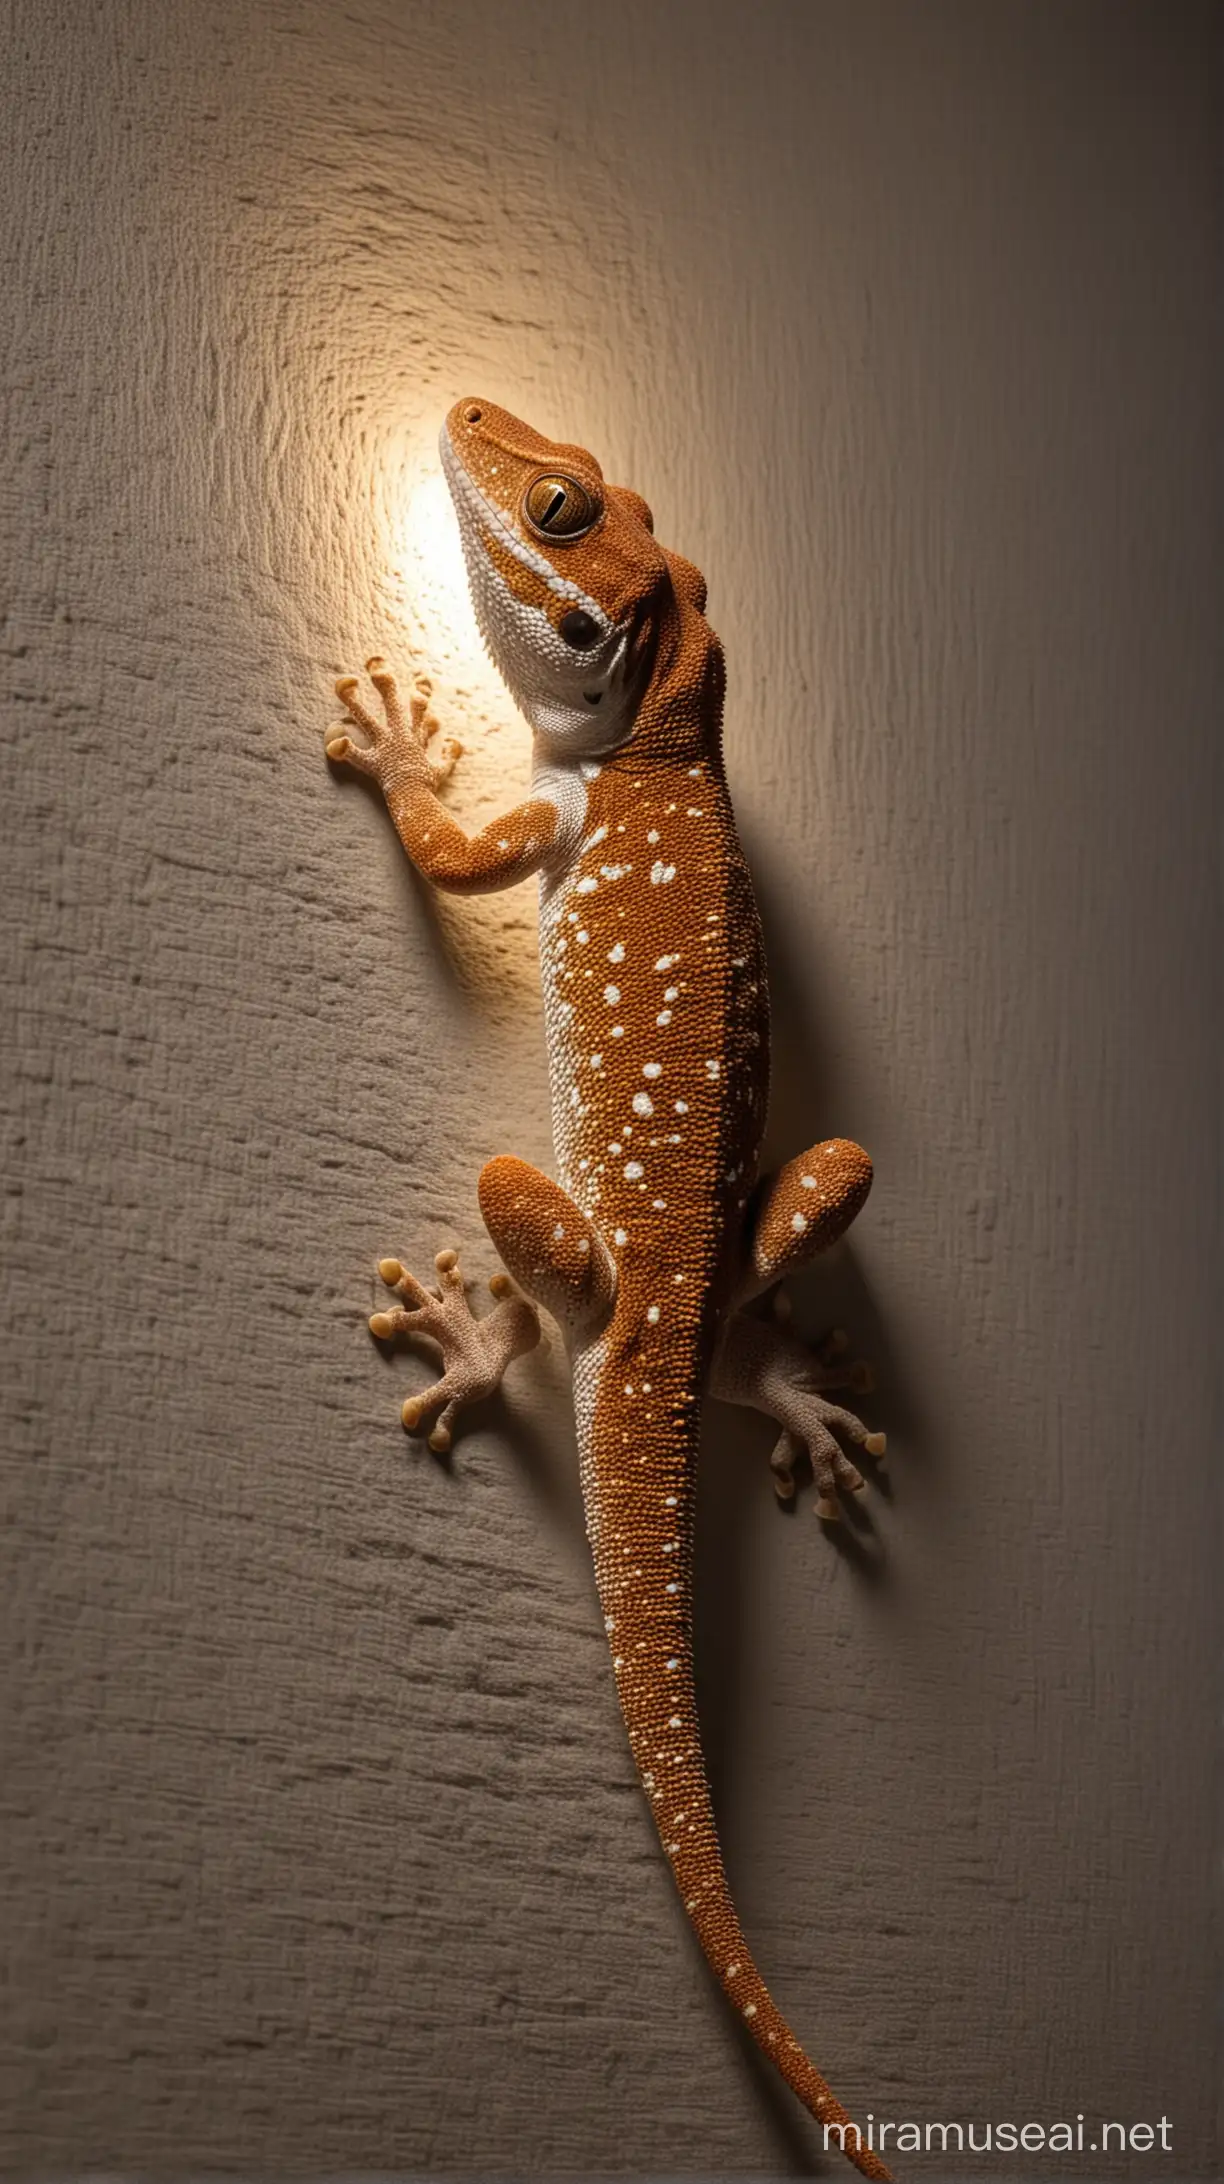 AwardWinning Nighttime Gecko on a Textured Wall